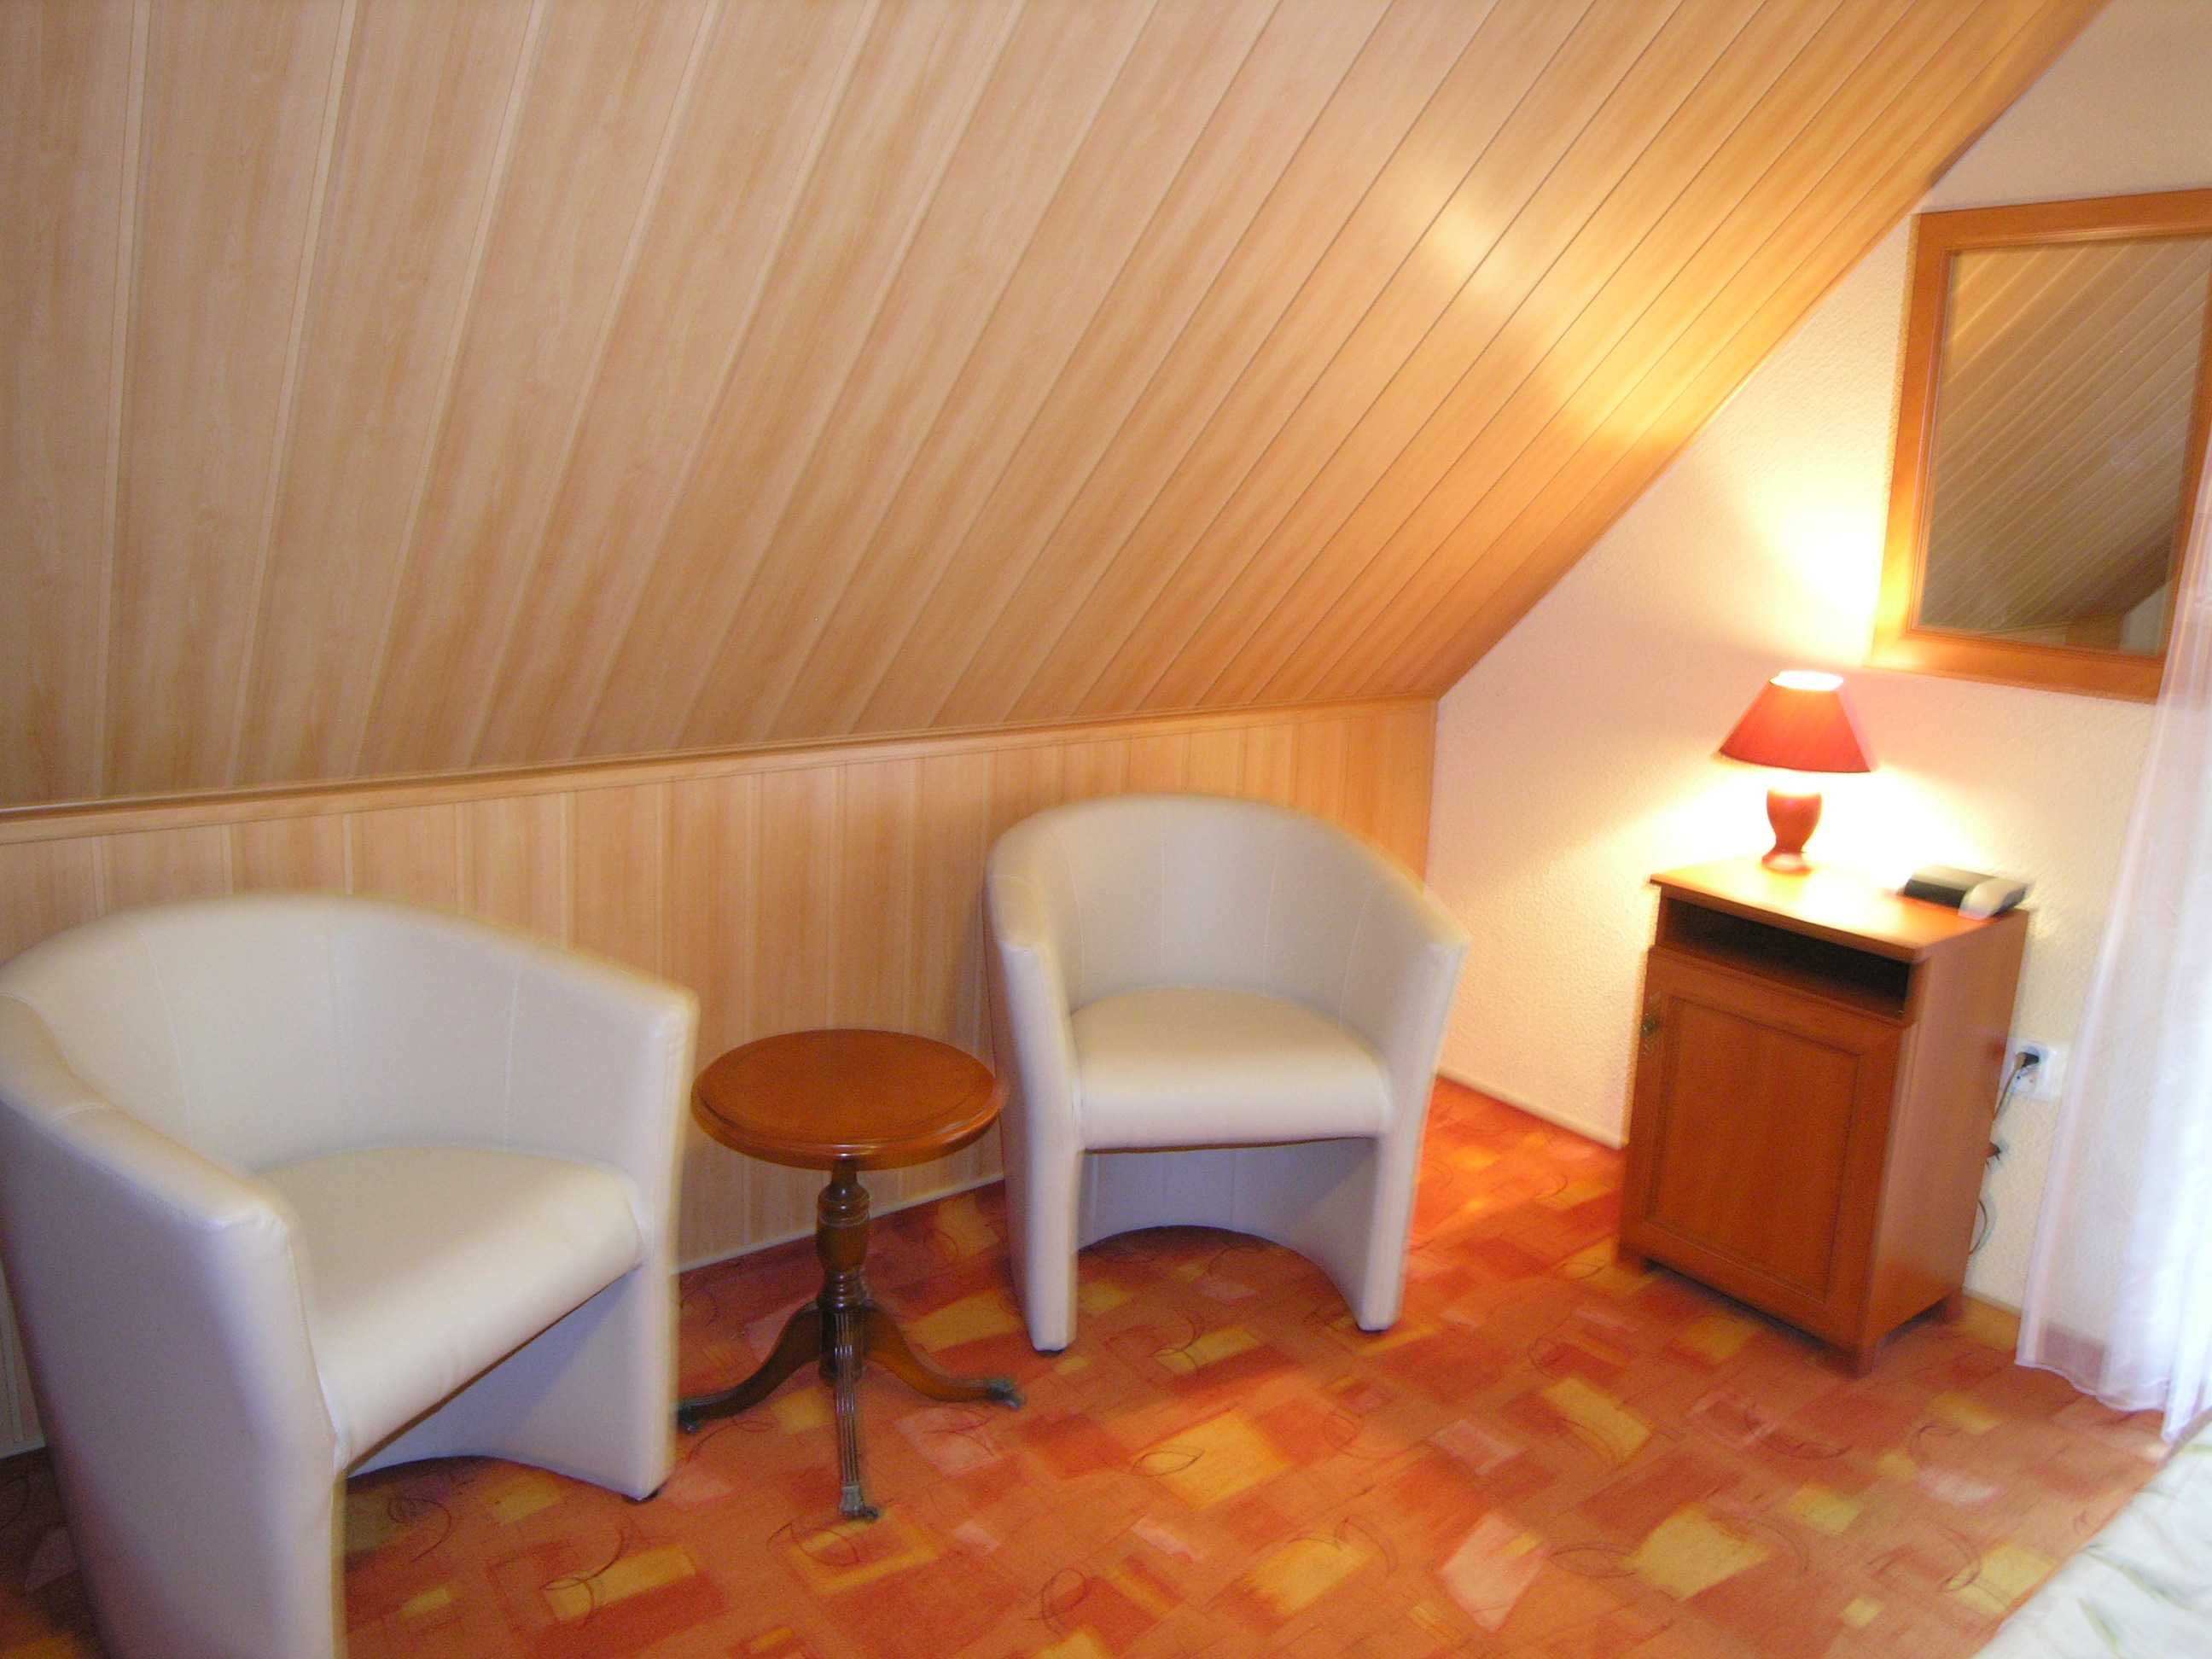 Dom nr 5 letniskowy na wakacje Domek nad jeziorem w Santocznie. Sauna